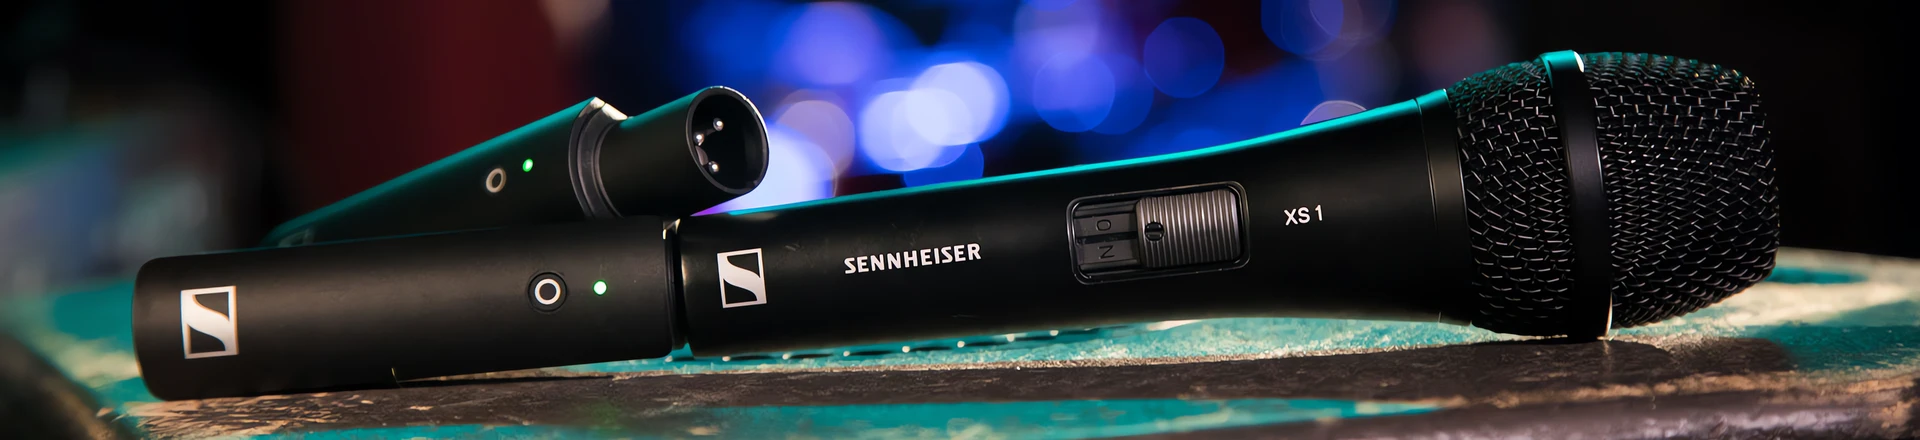 Sennheiser XS Wireless Digital - Wybrane zestawy do końca sierpnia o ponad 40% taniej